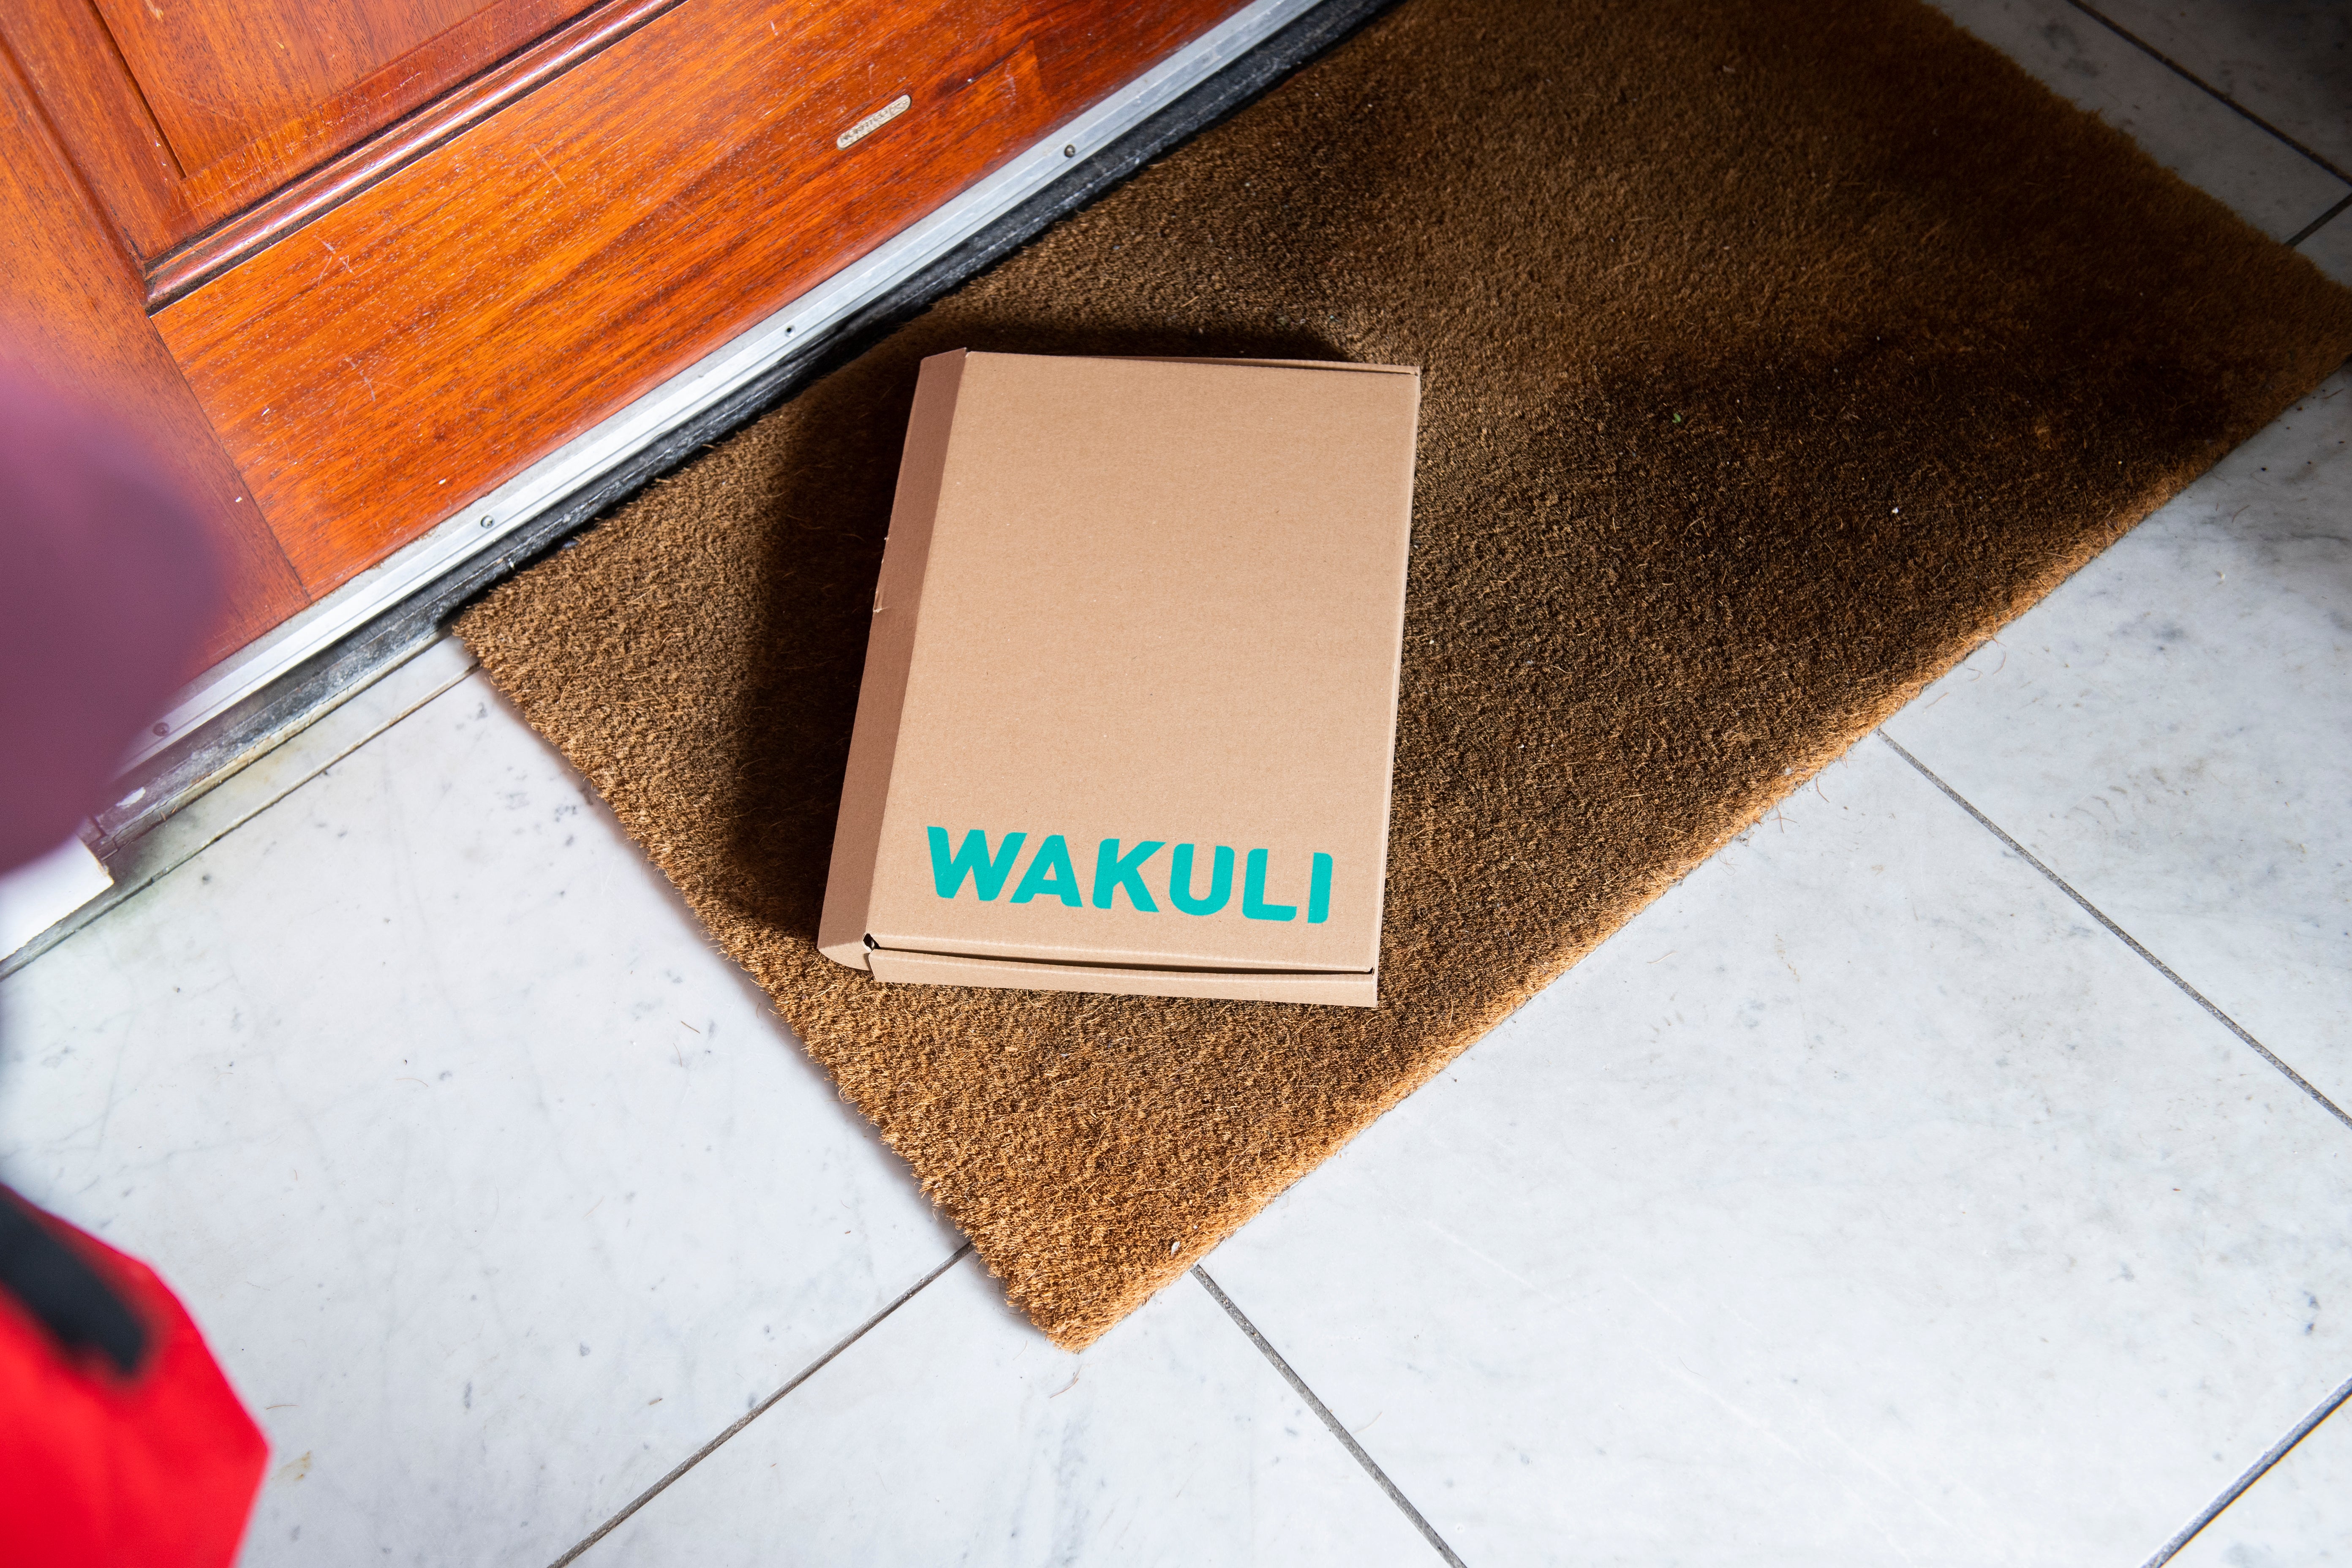 Koffiebonen voor latte - Een kartonnen doos met Wakuli erop ligt op een deurmat voor een bruine deur.